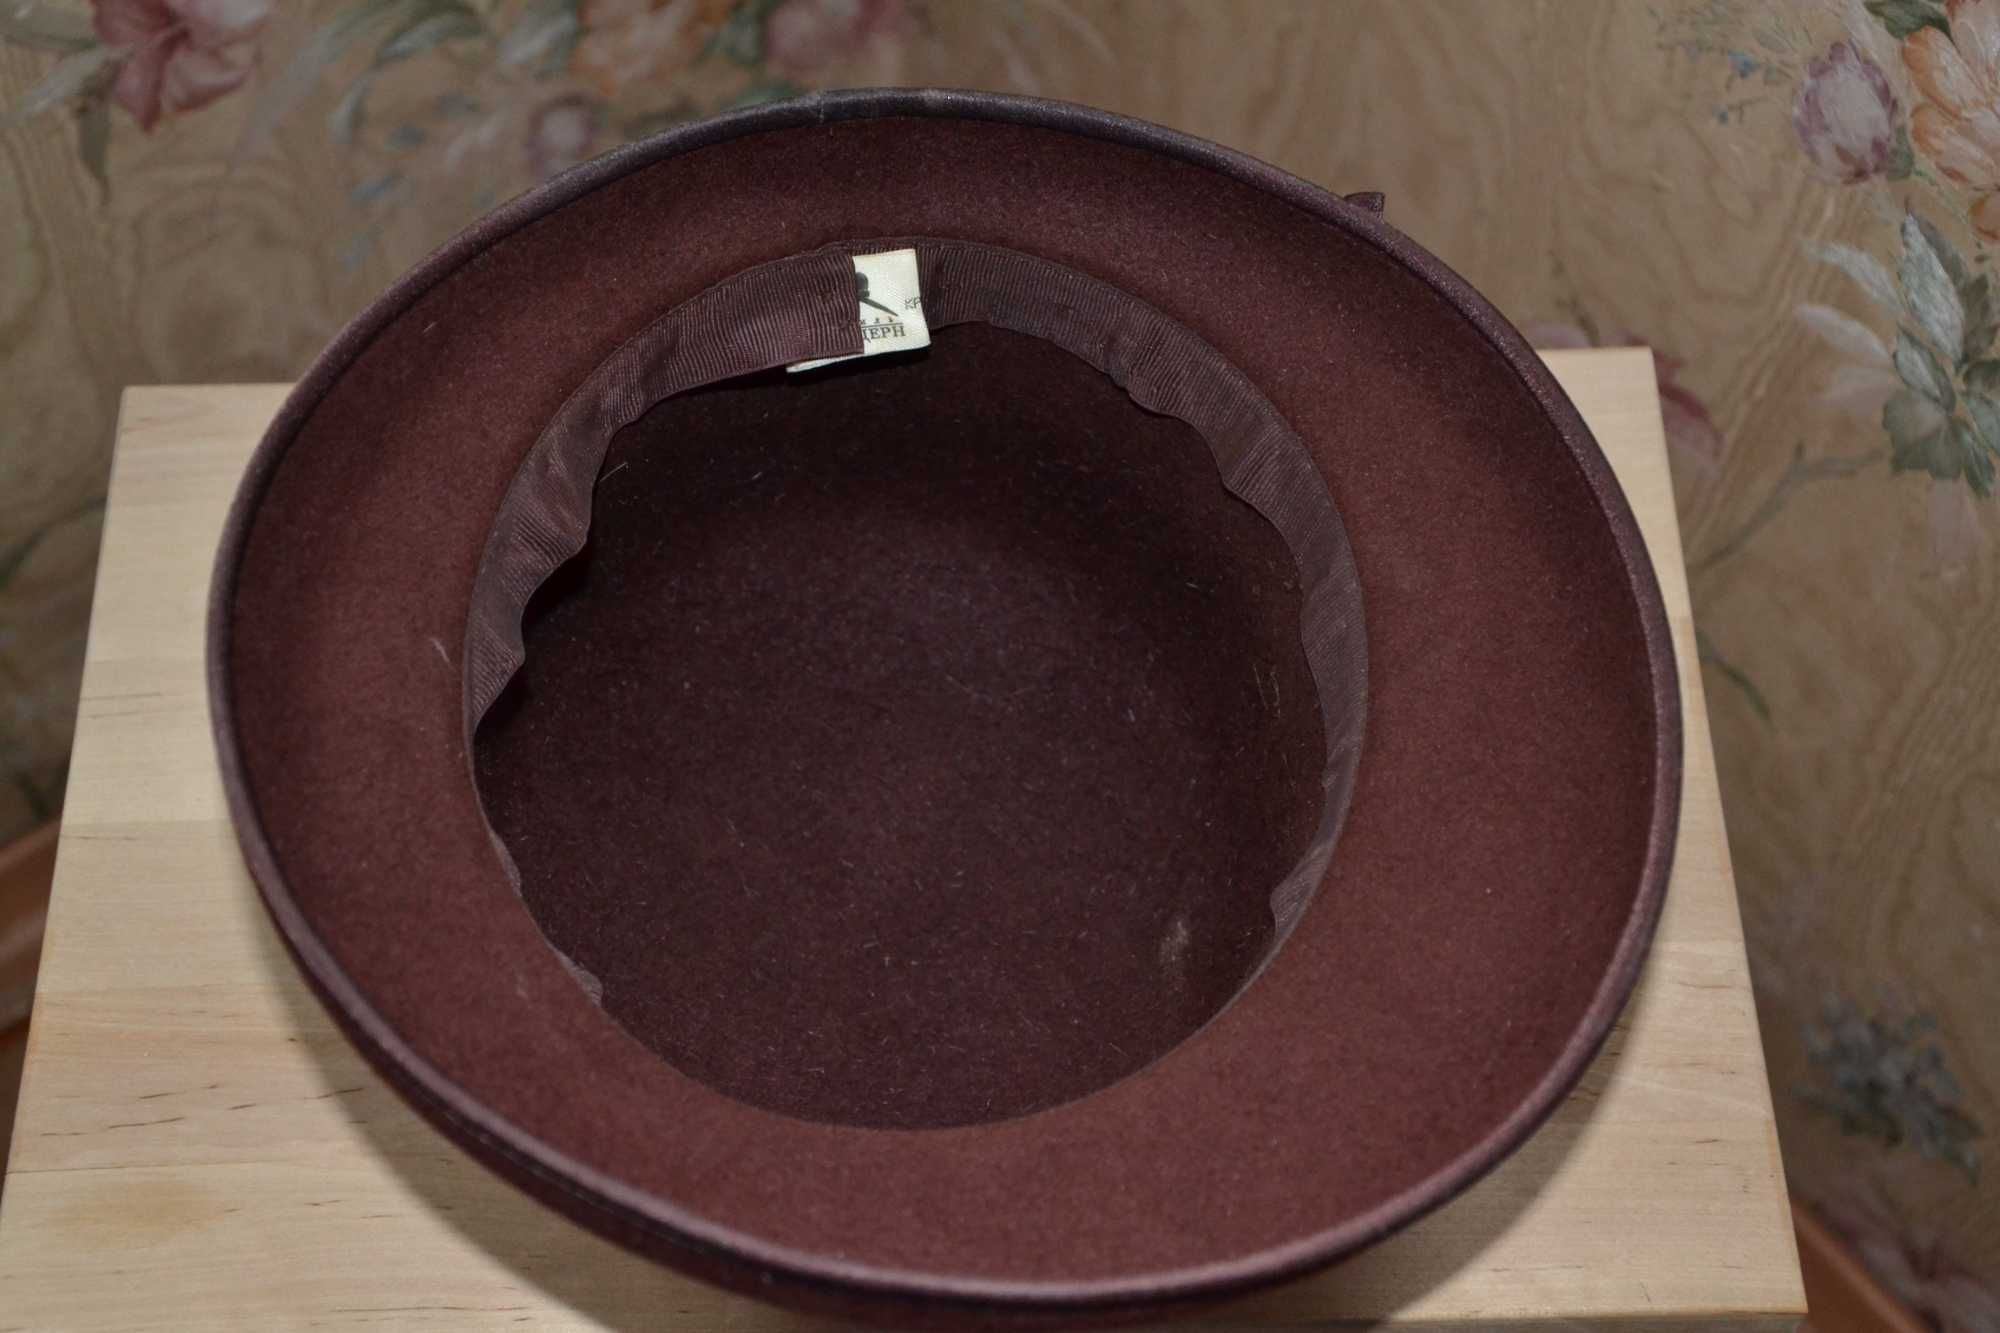 Фетровая коричневая  шляпа с полями пух р.56 федора